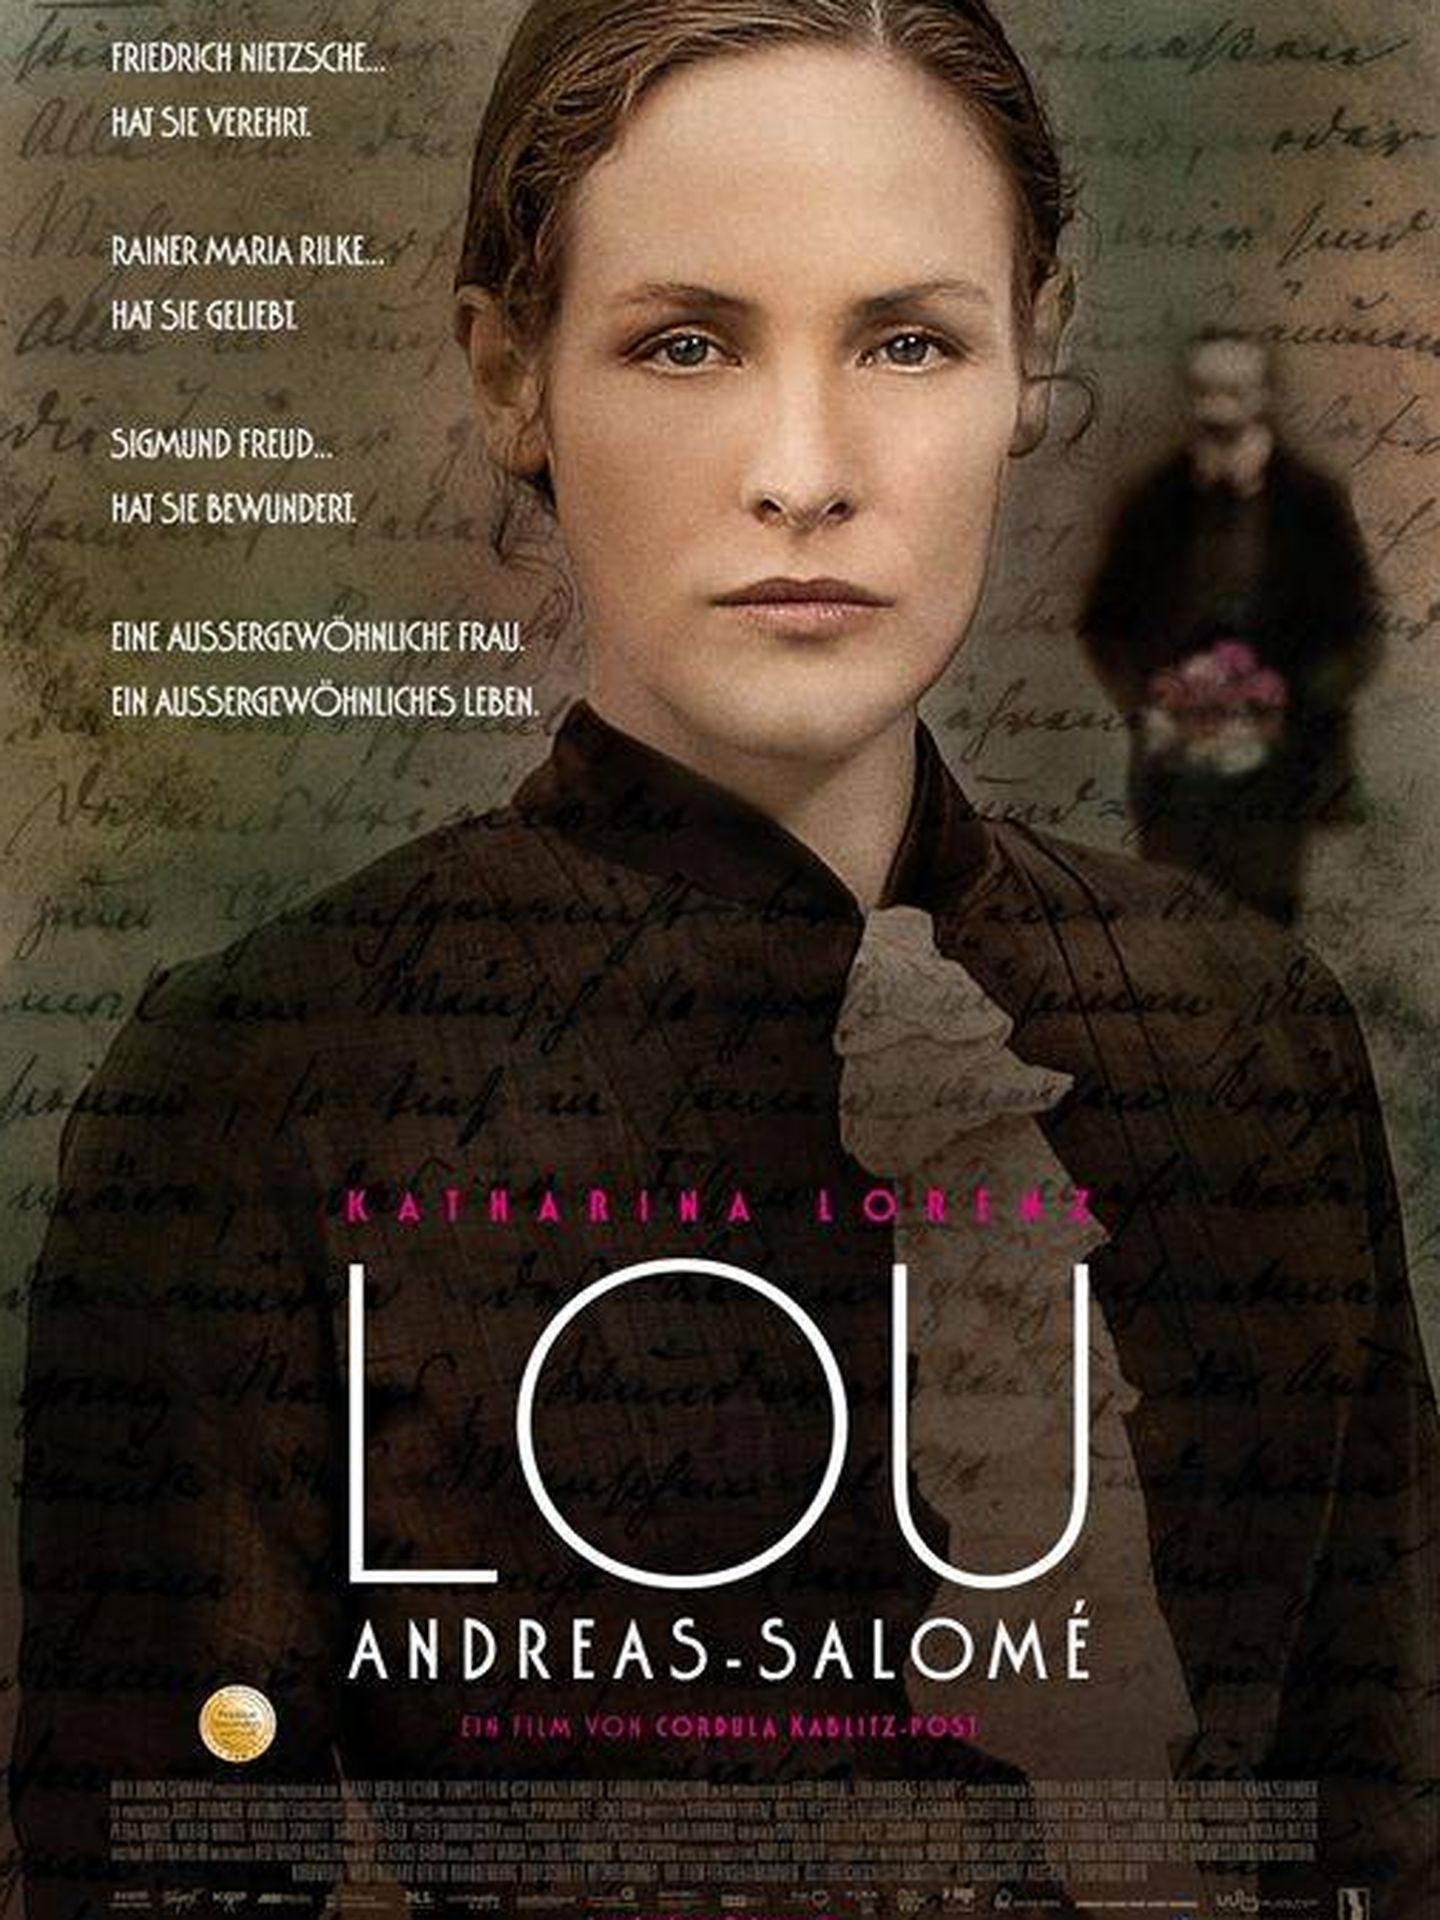 Cartel de 'Lou Andreas Salomé'.